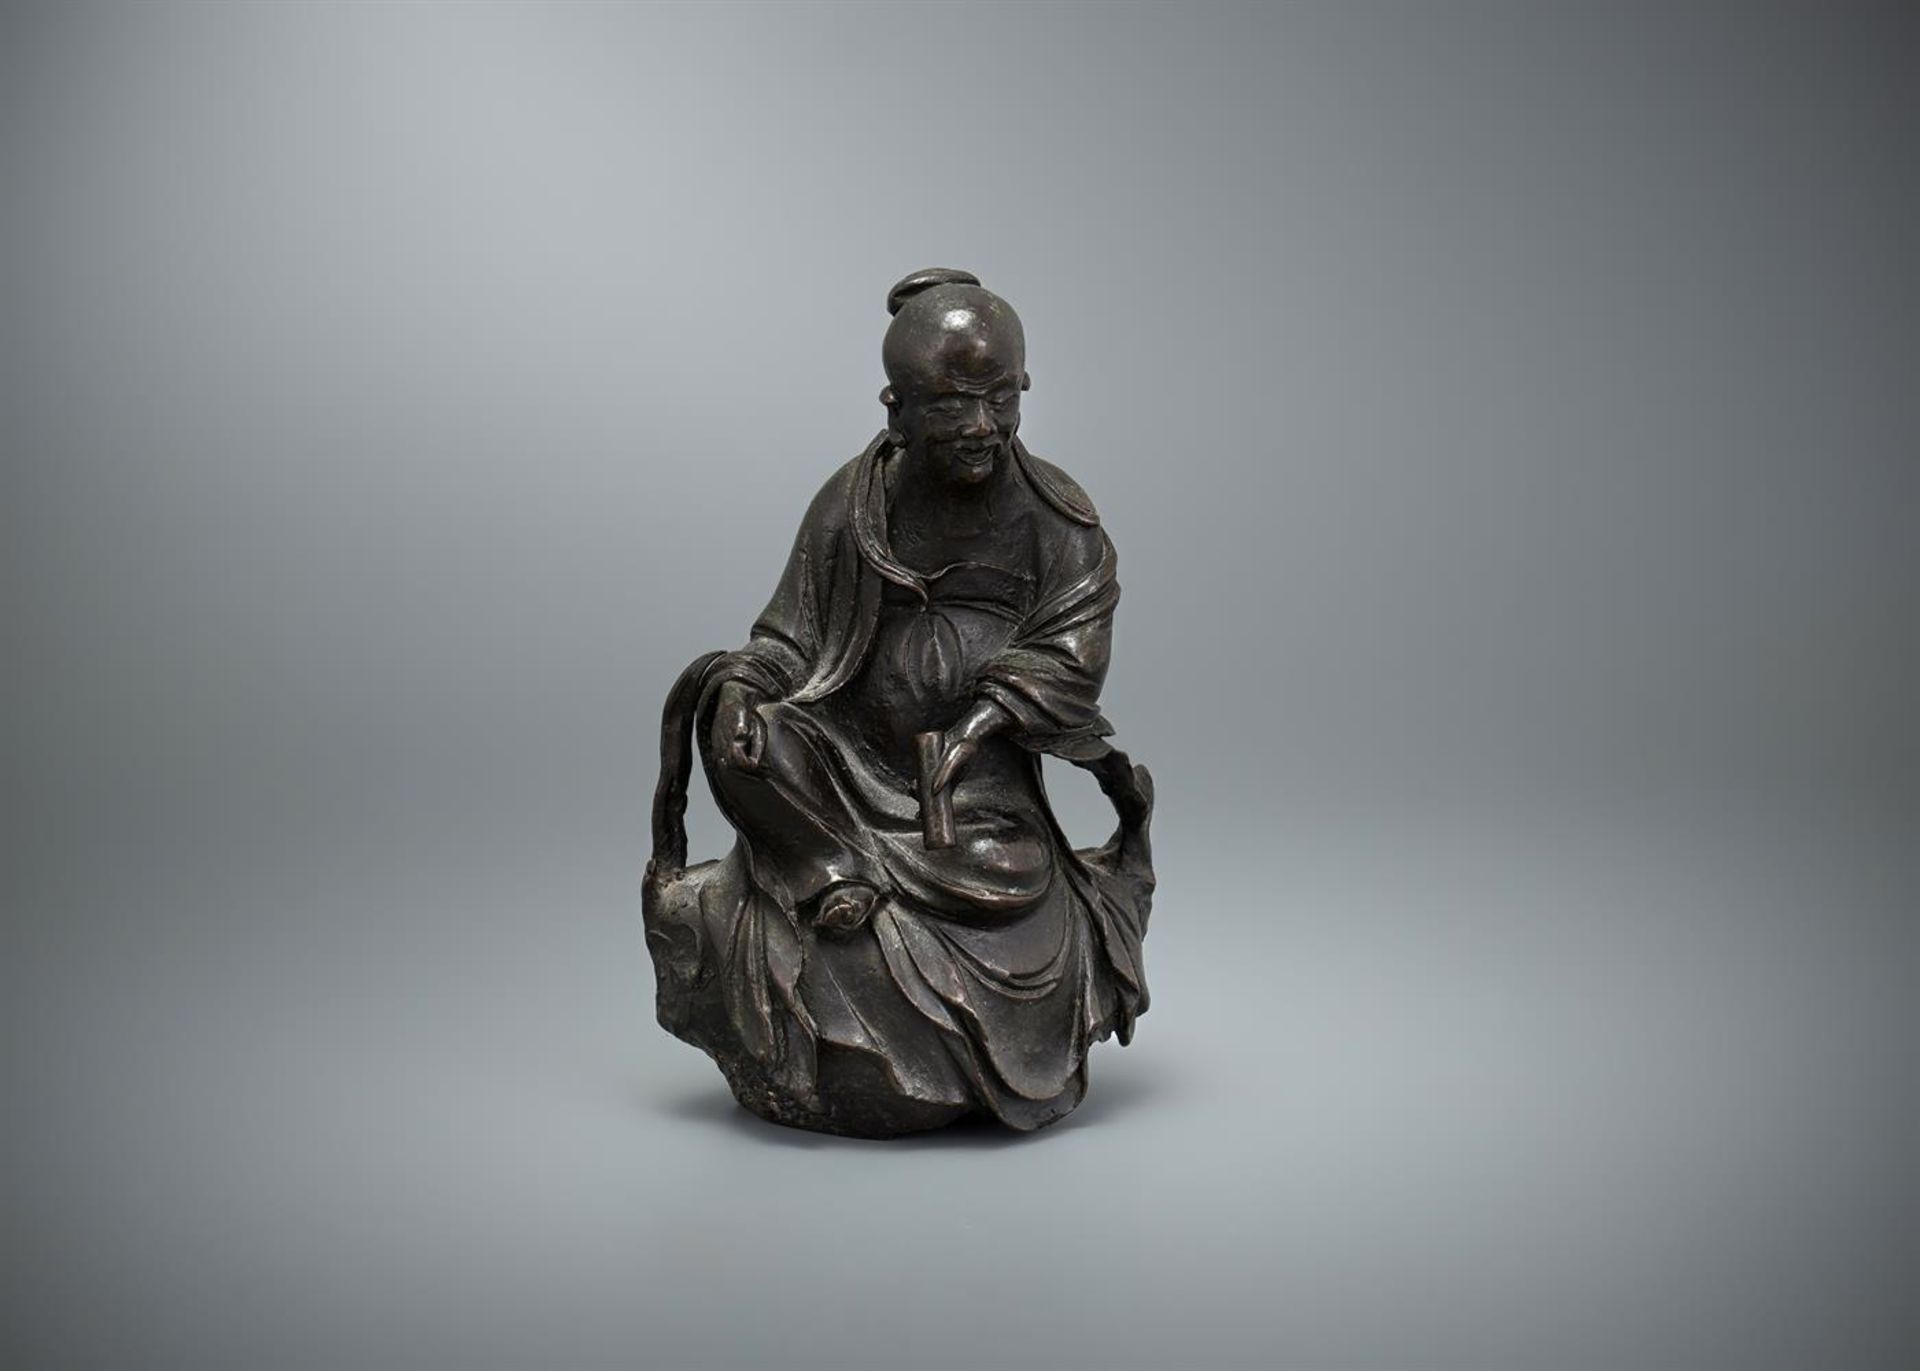 A Chinese bronze figure of Lao Zi